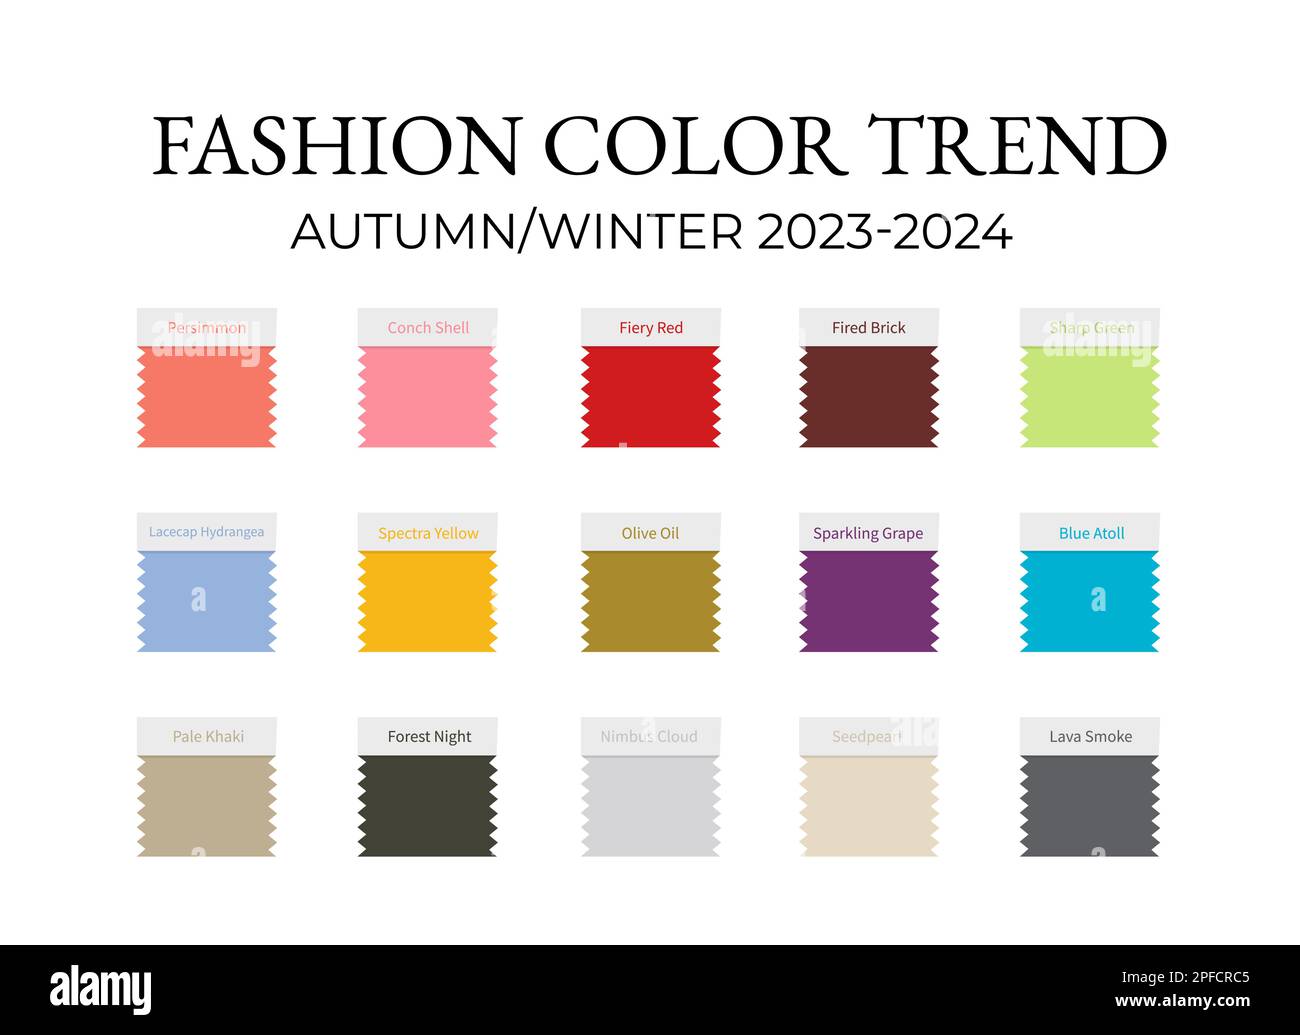 Moda Color Tendencia Otoño Invierno 2023 2024. Guía de paleta de